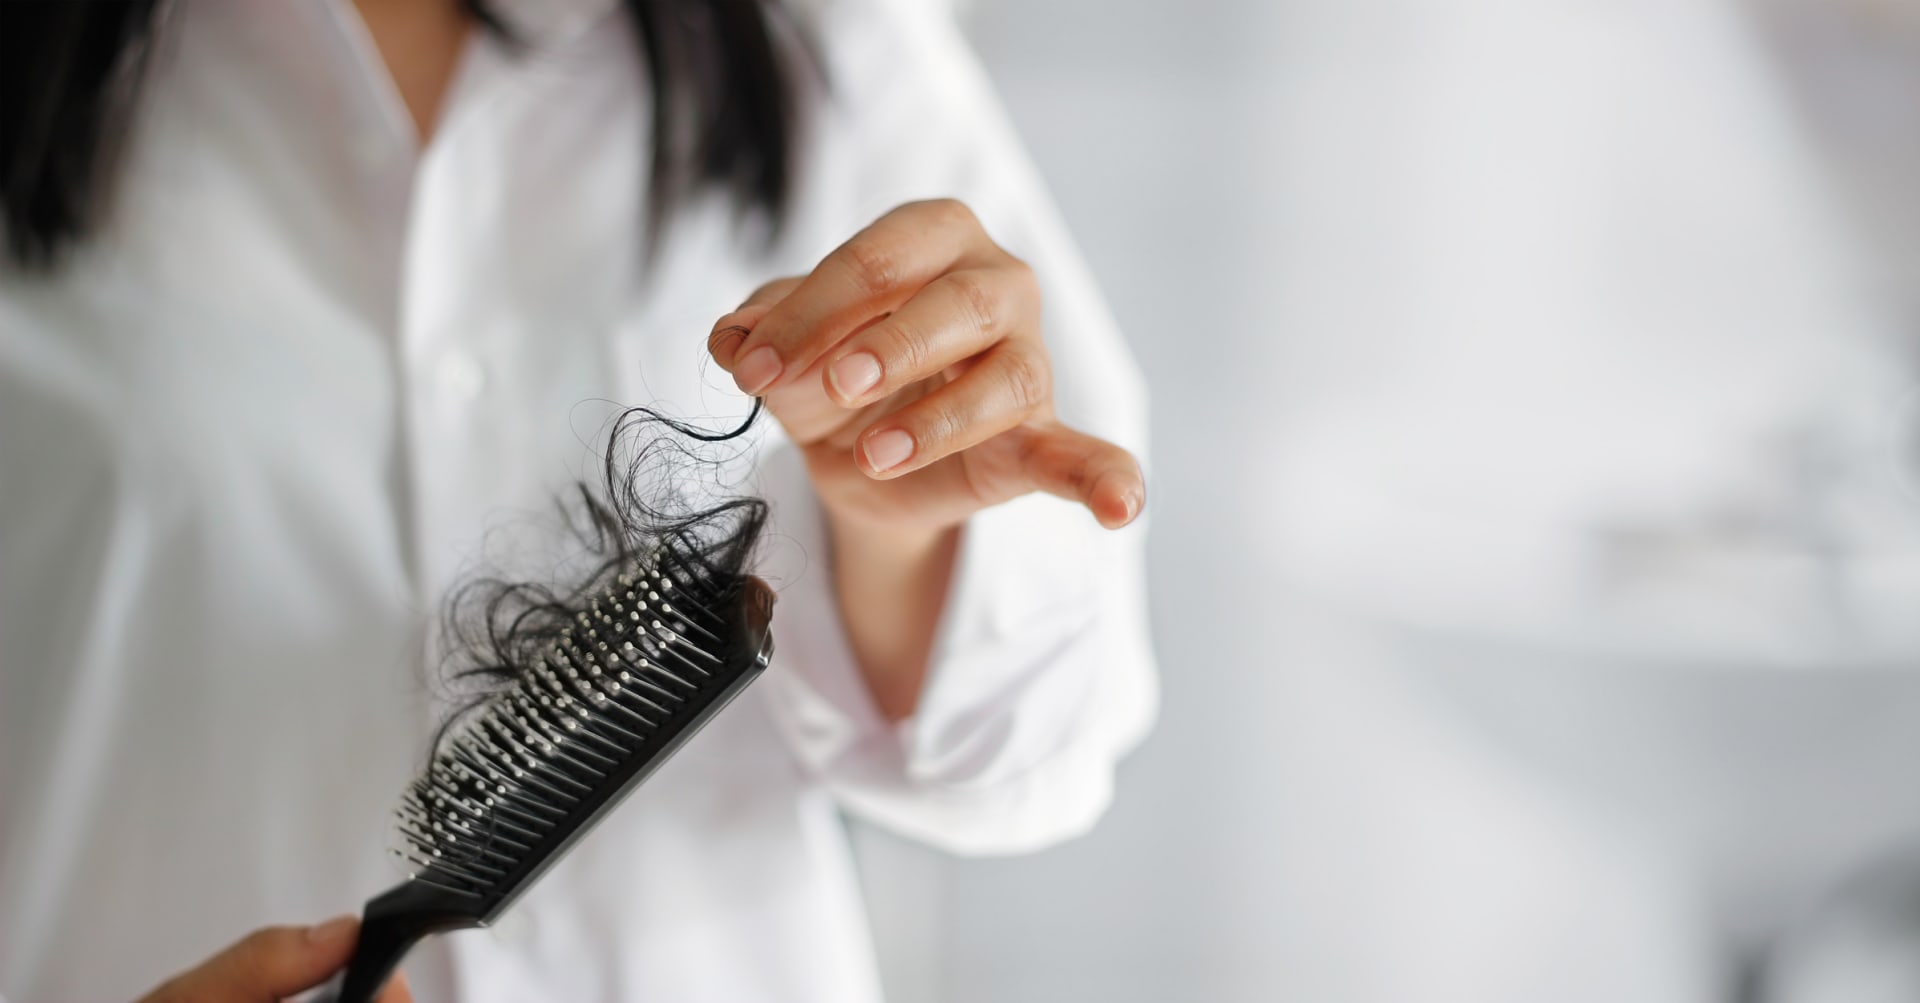 Padání vlasů mohou způsobit rozhozené hormony nebo nedostatek železa.